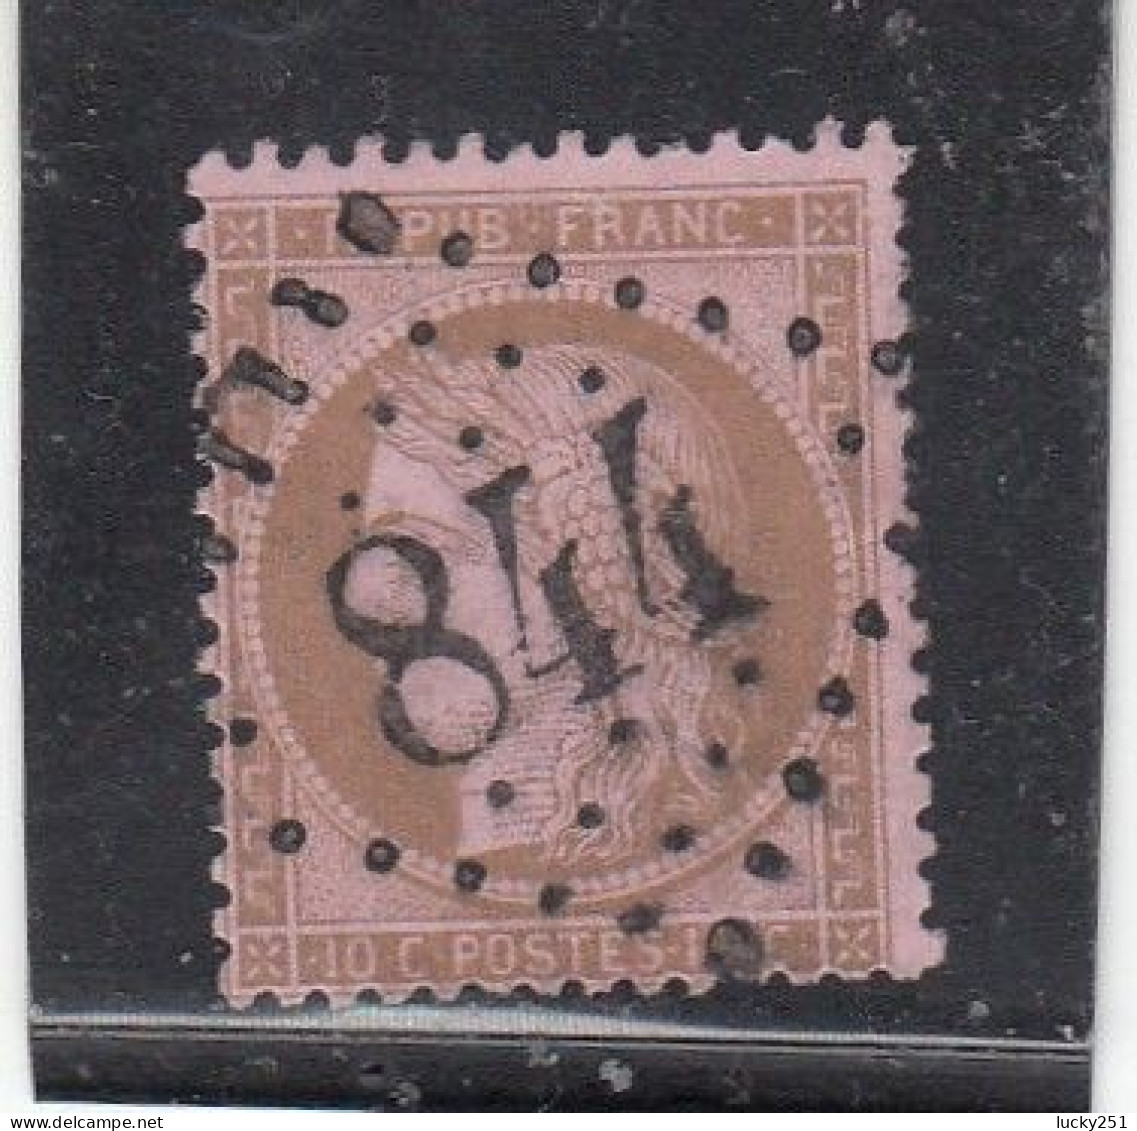 France - Année 1871/75 - N°YT 58 - Type Cérès - Oblitération Losange GC - 10c Brun S. Rose - 1871-1875 Cérès